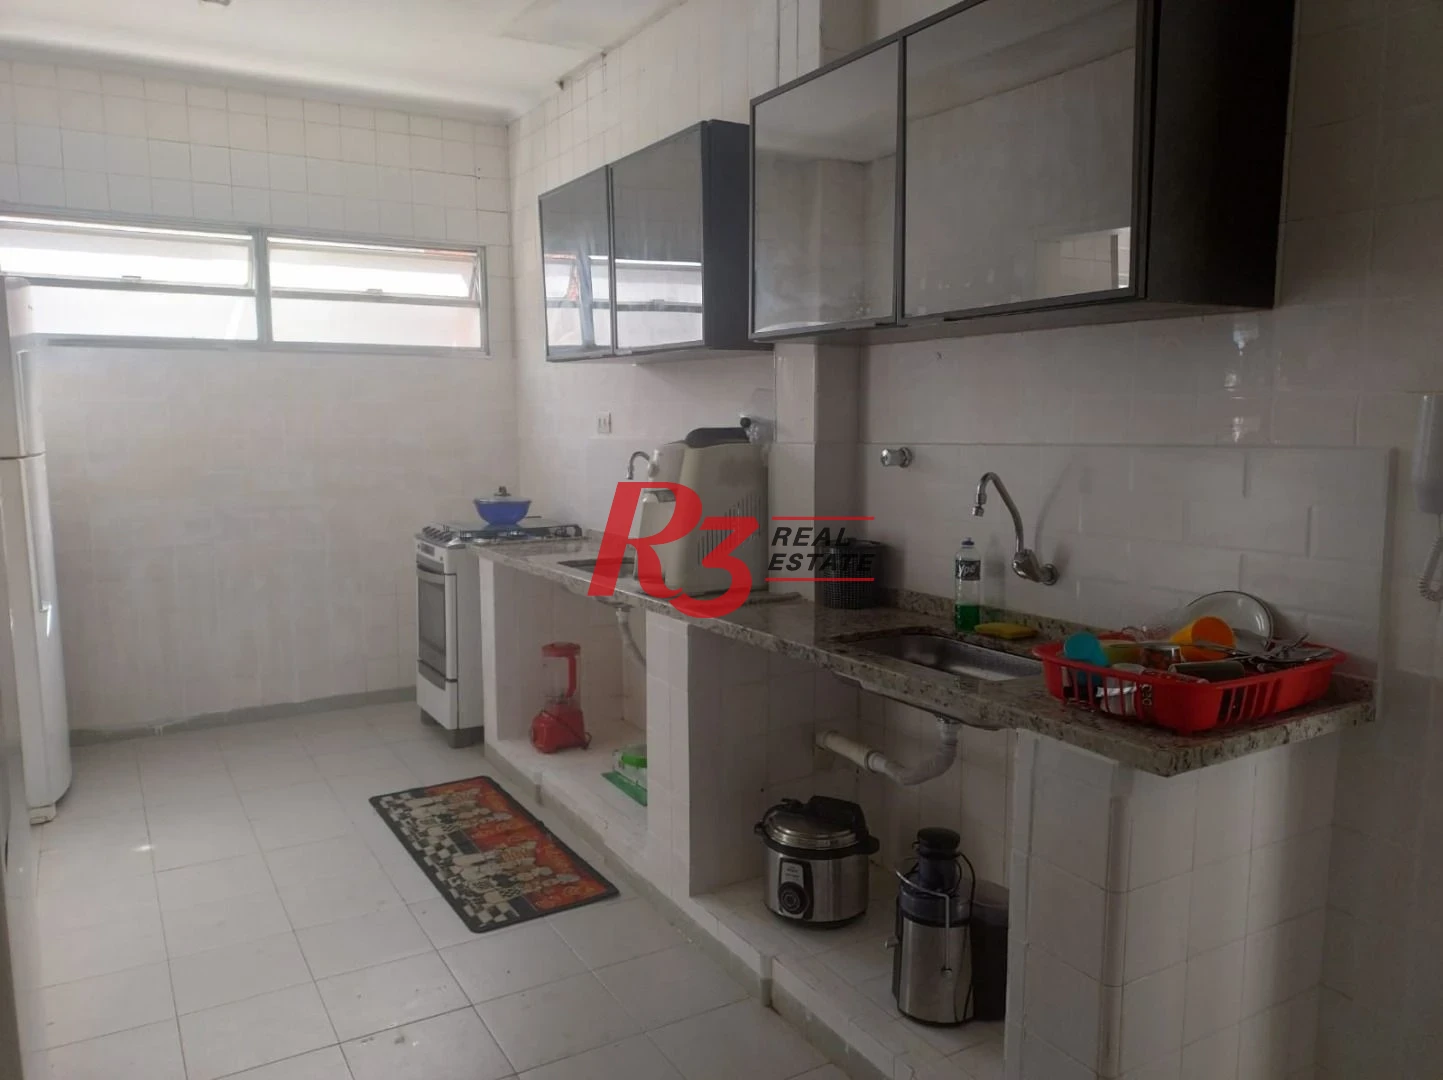 Apartamento com 4 dormitórios à venda, 240 m² por R$ 800.000,00 - Gonzaga - Santos/SP